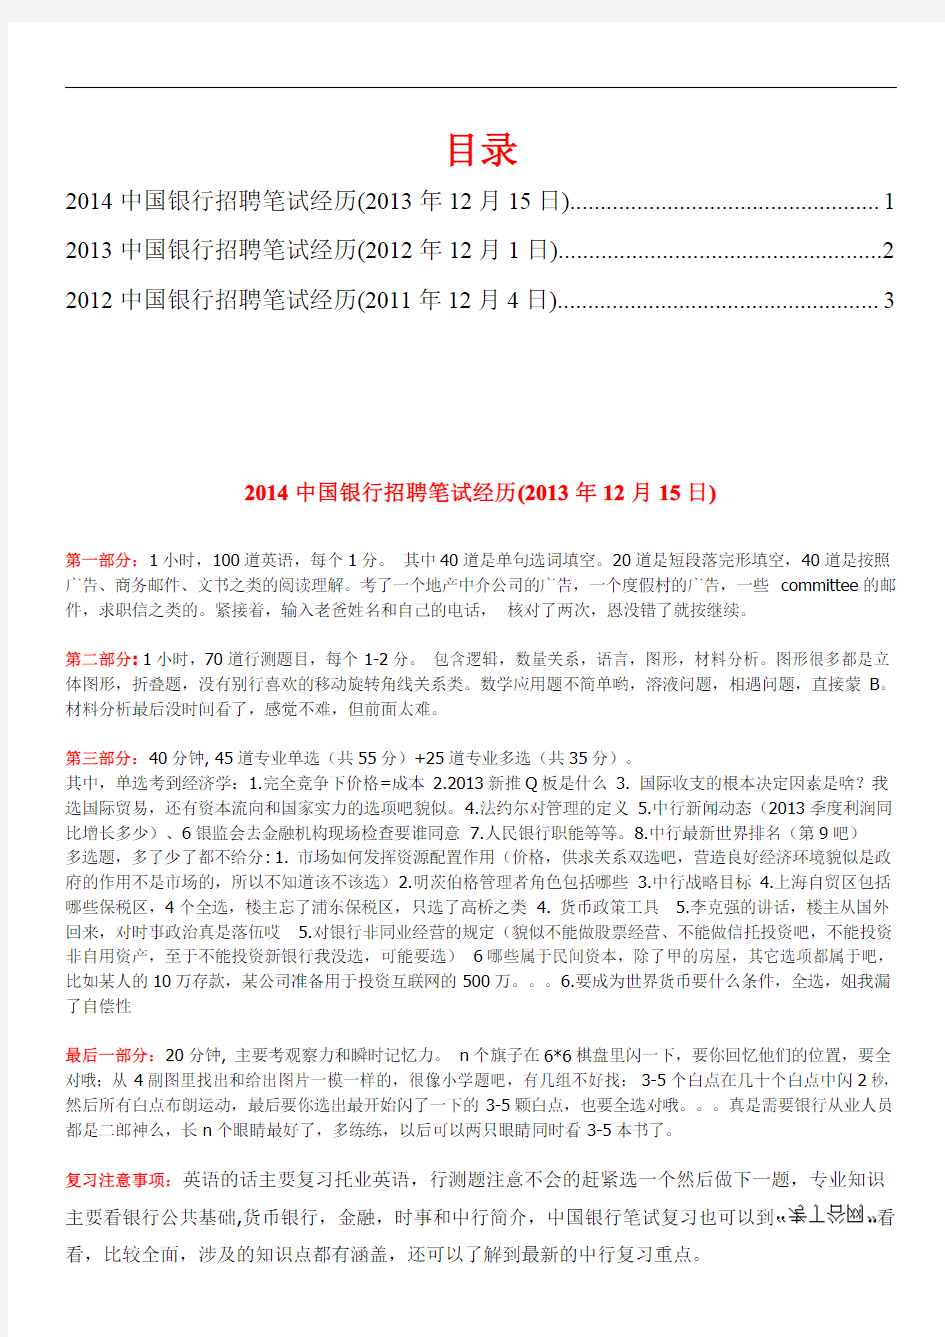 2014-2015年中国银行招聘考试真题笔试题型大全